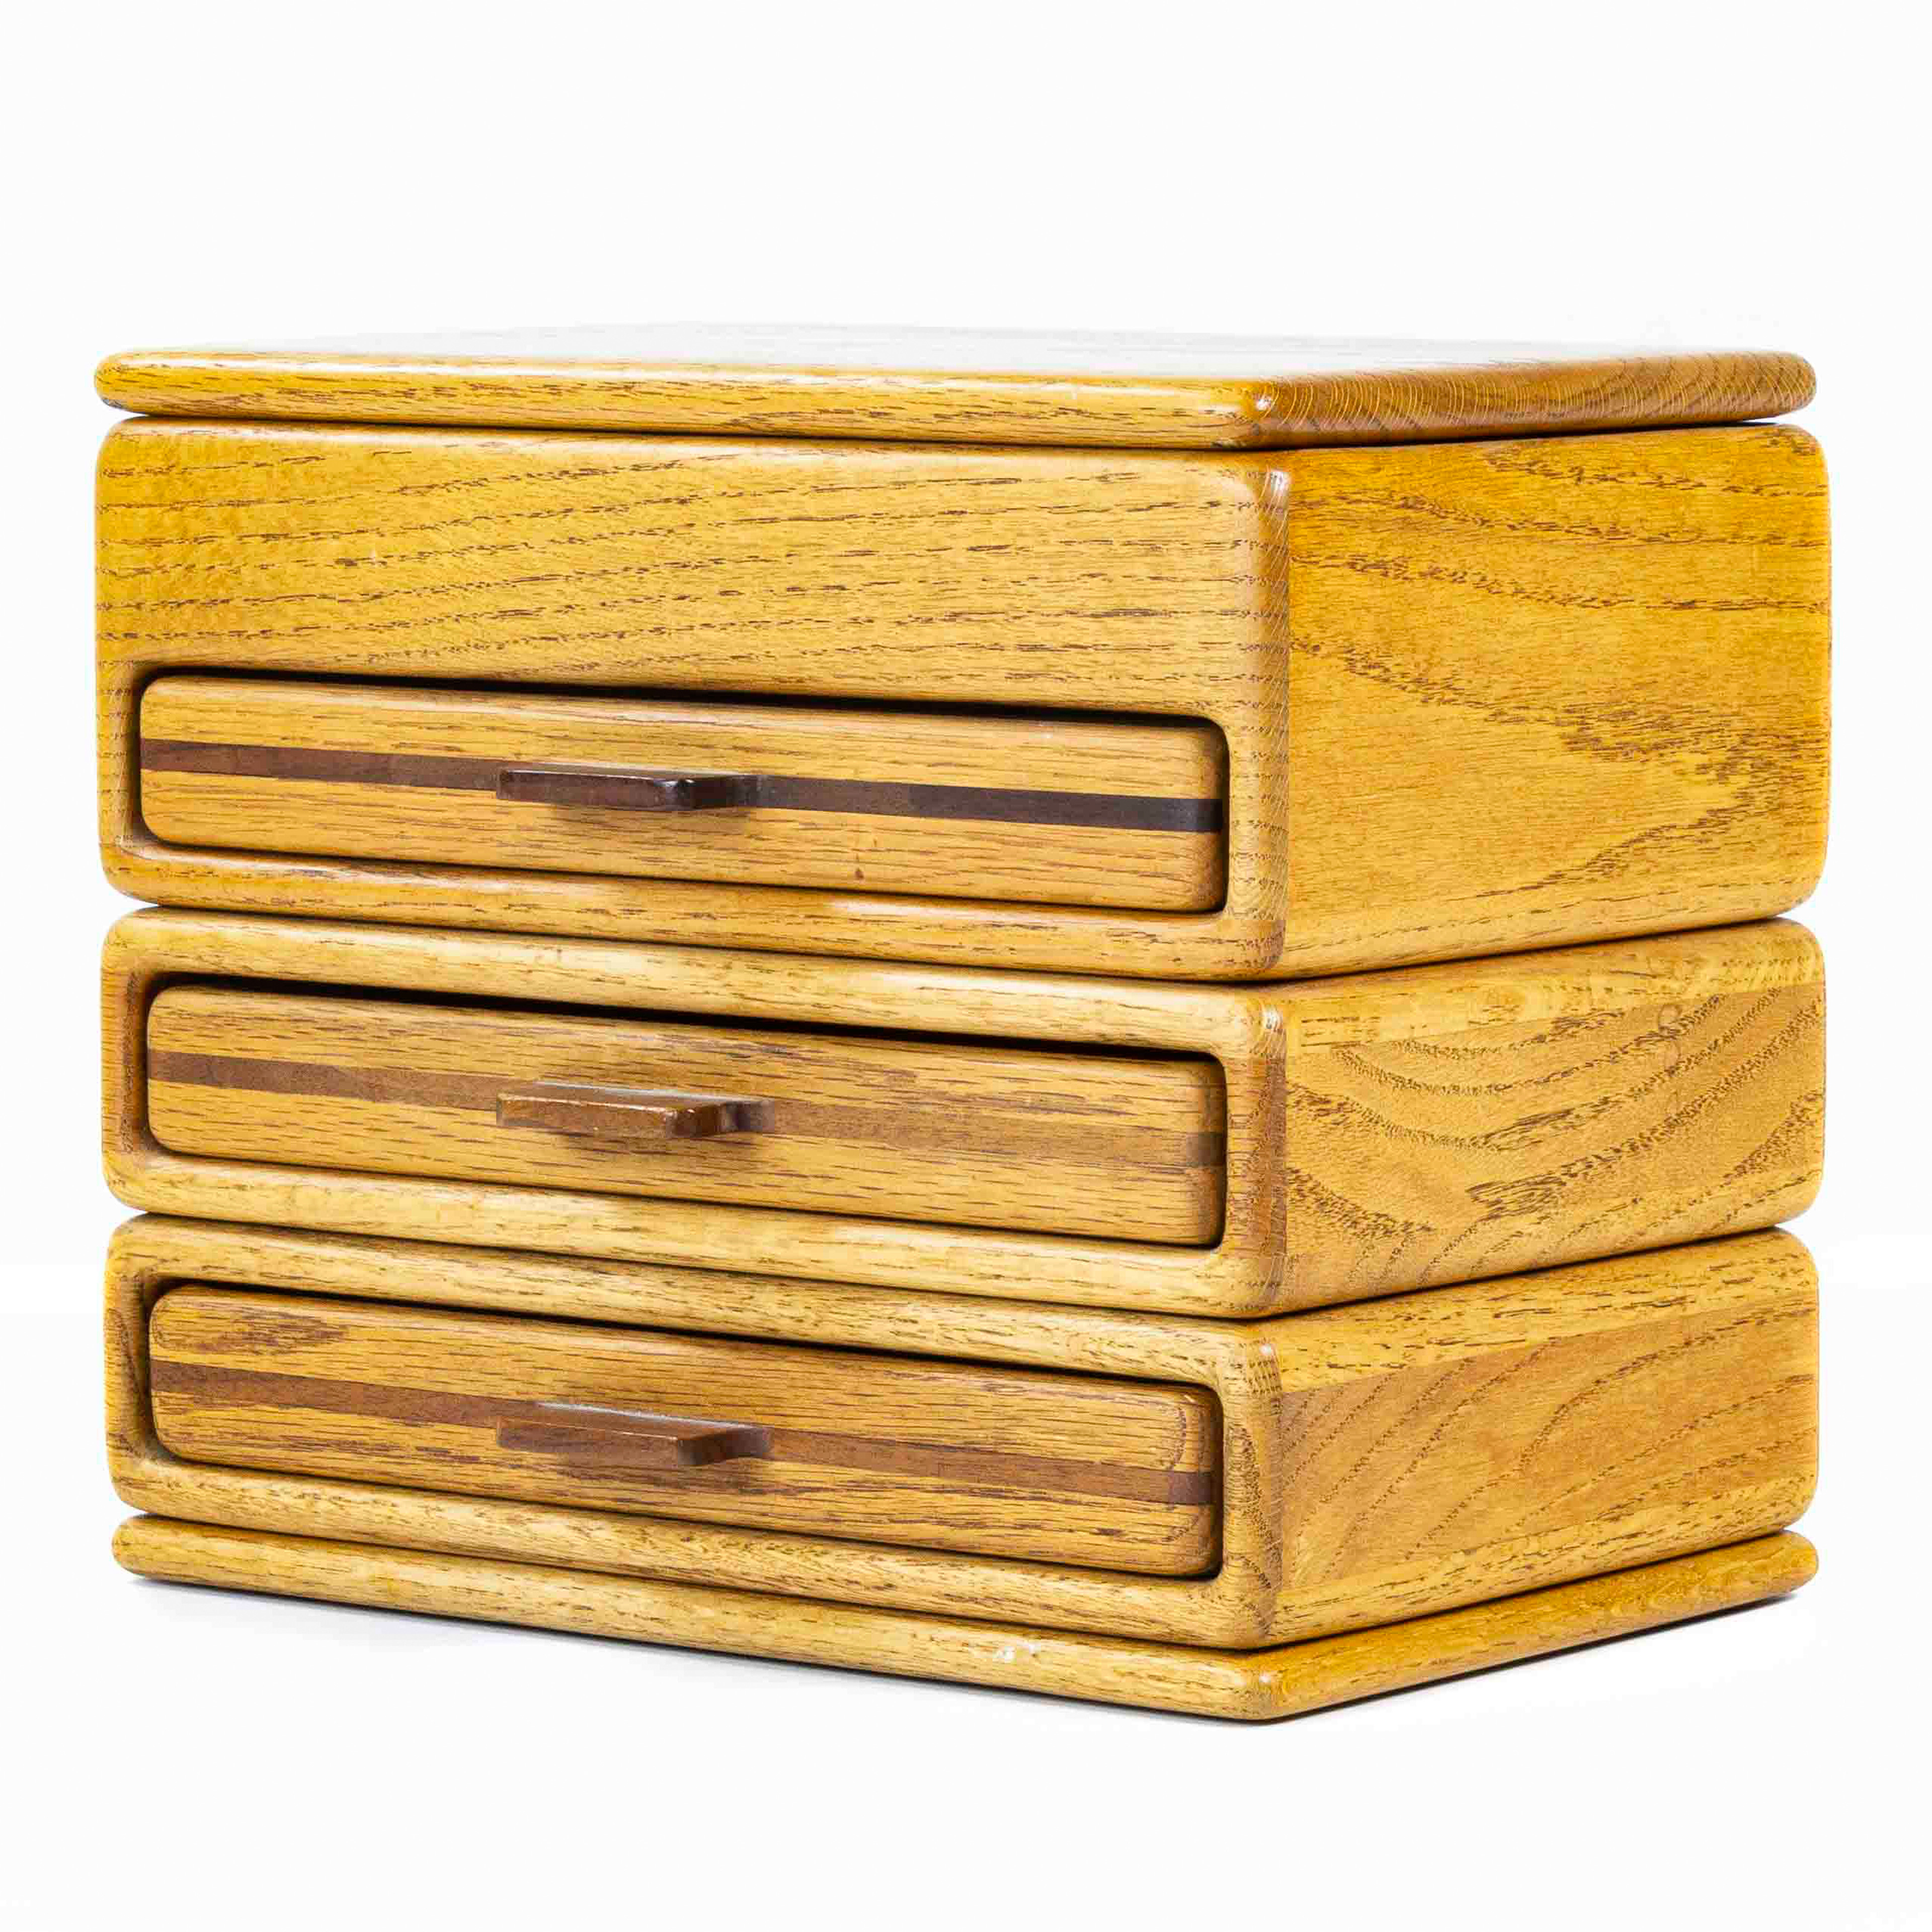 A STUDIO WOOD JEWELRY BOX A Studio wood